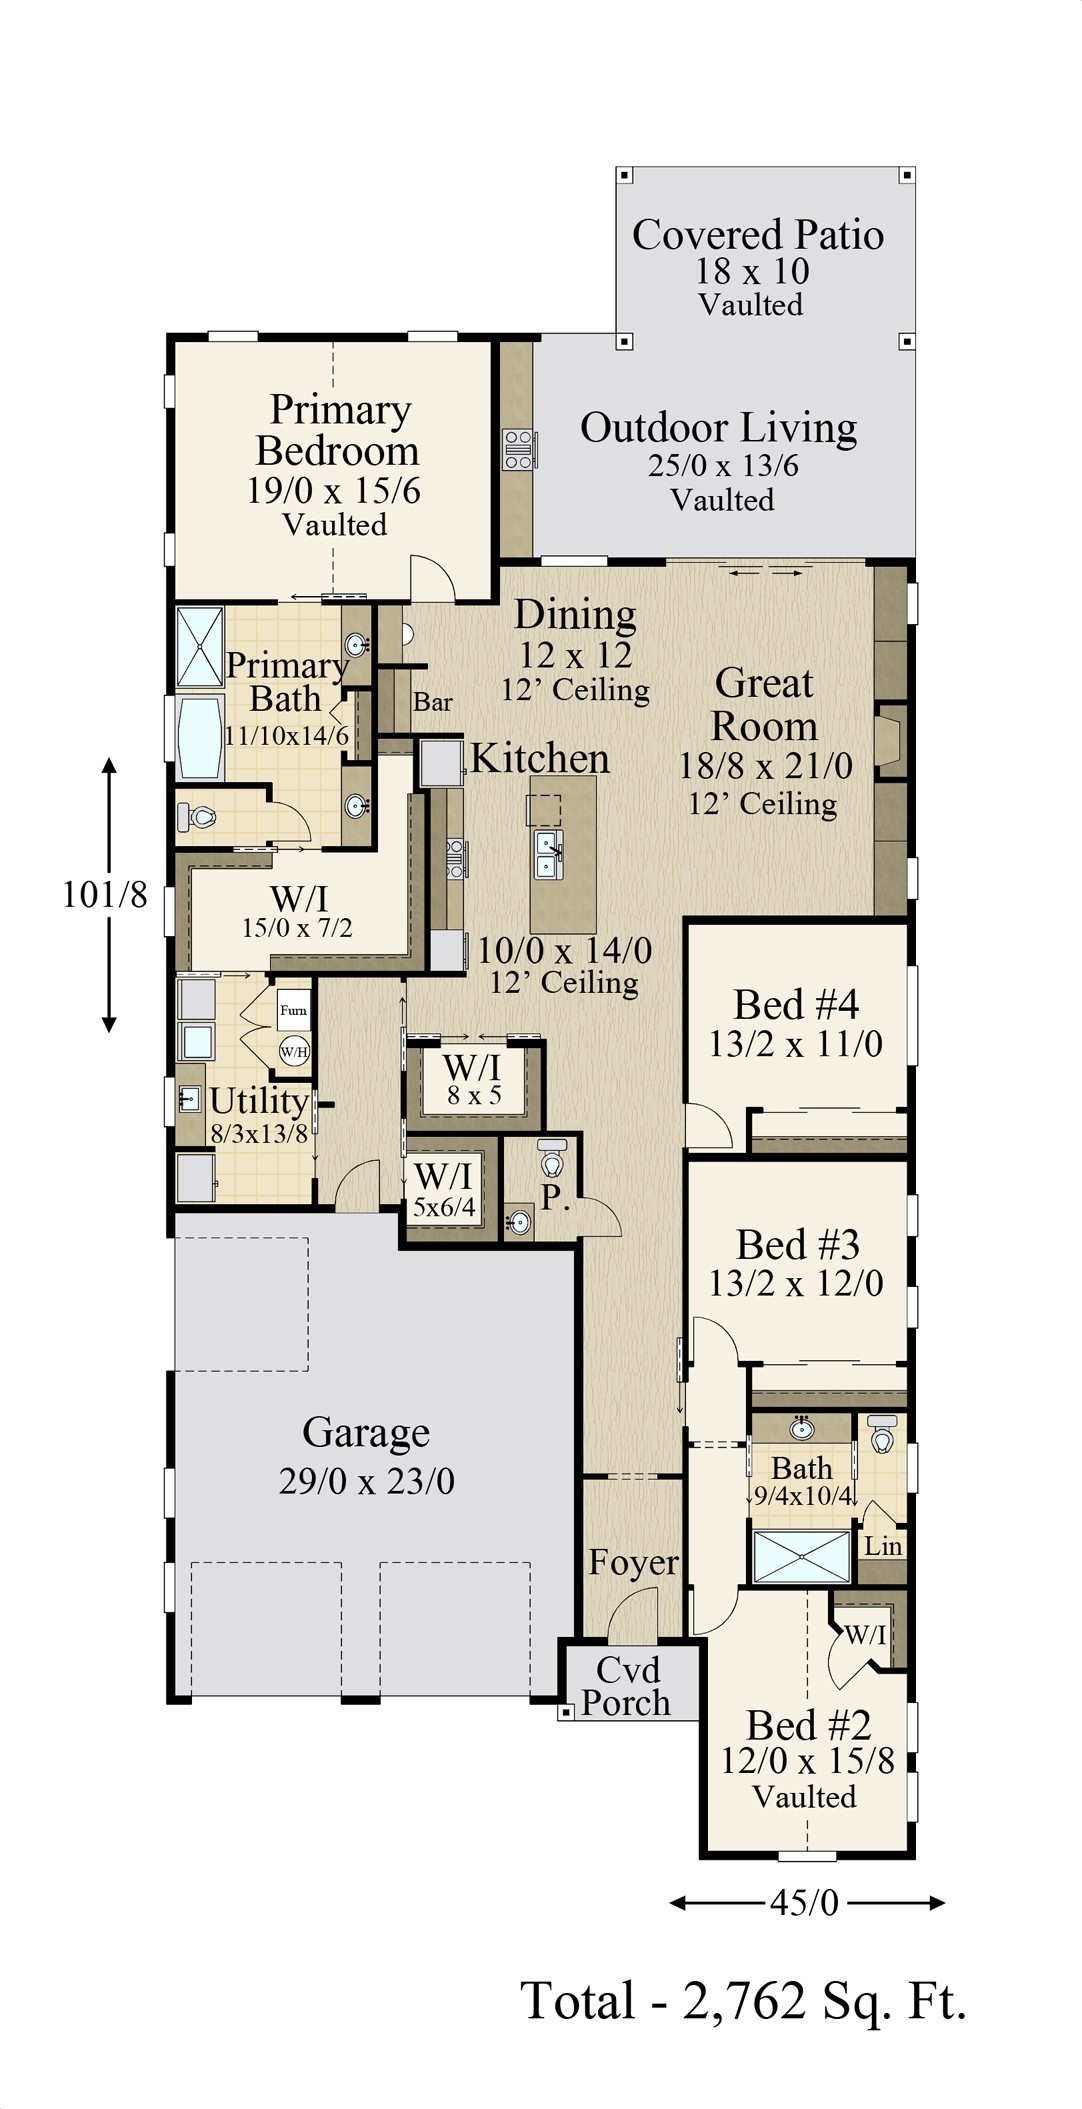 rambler house floor plans